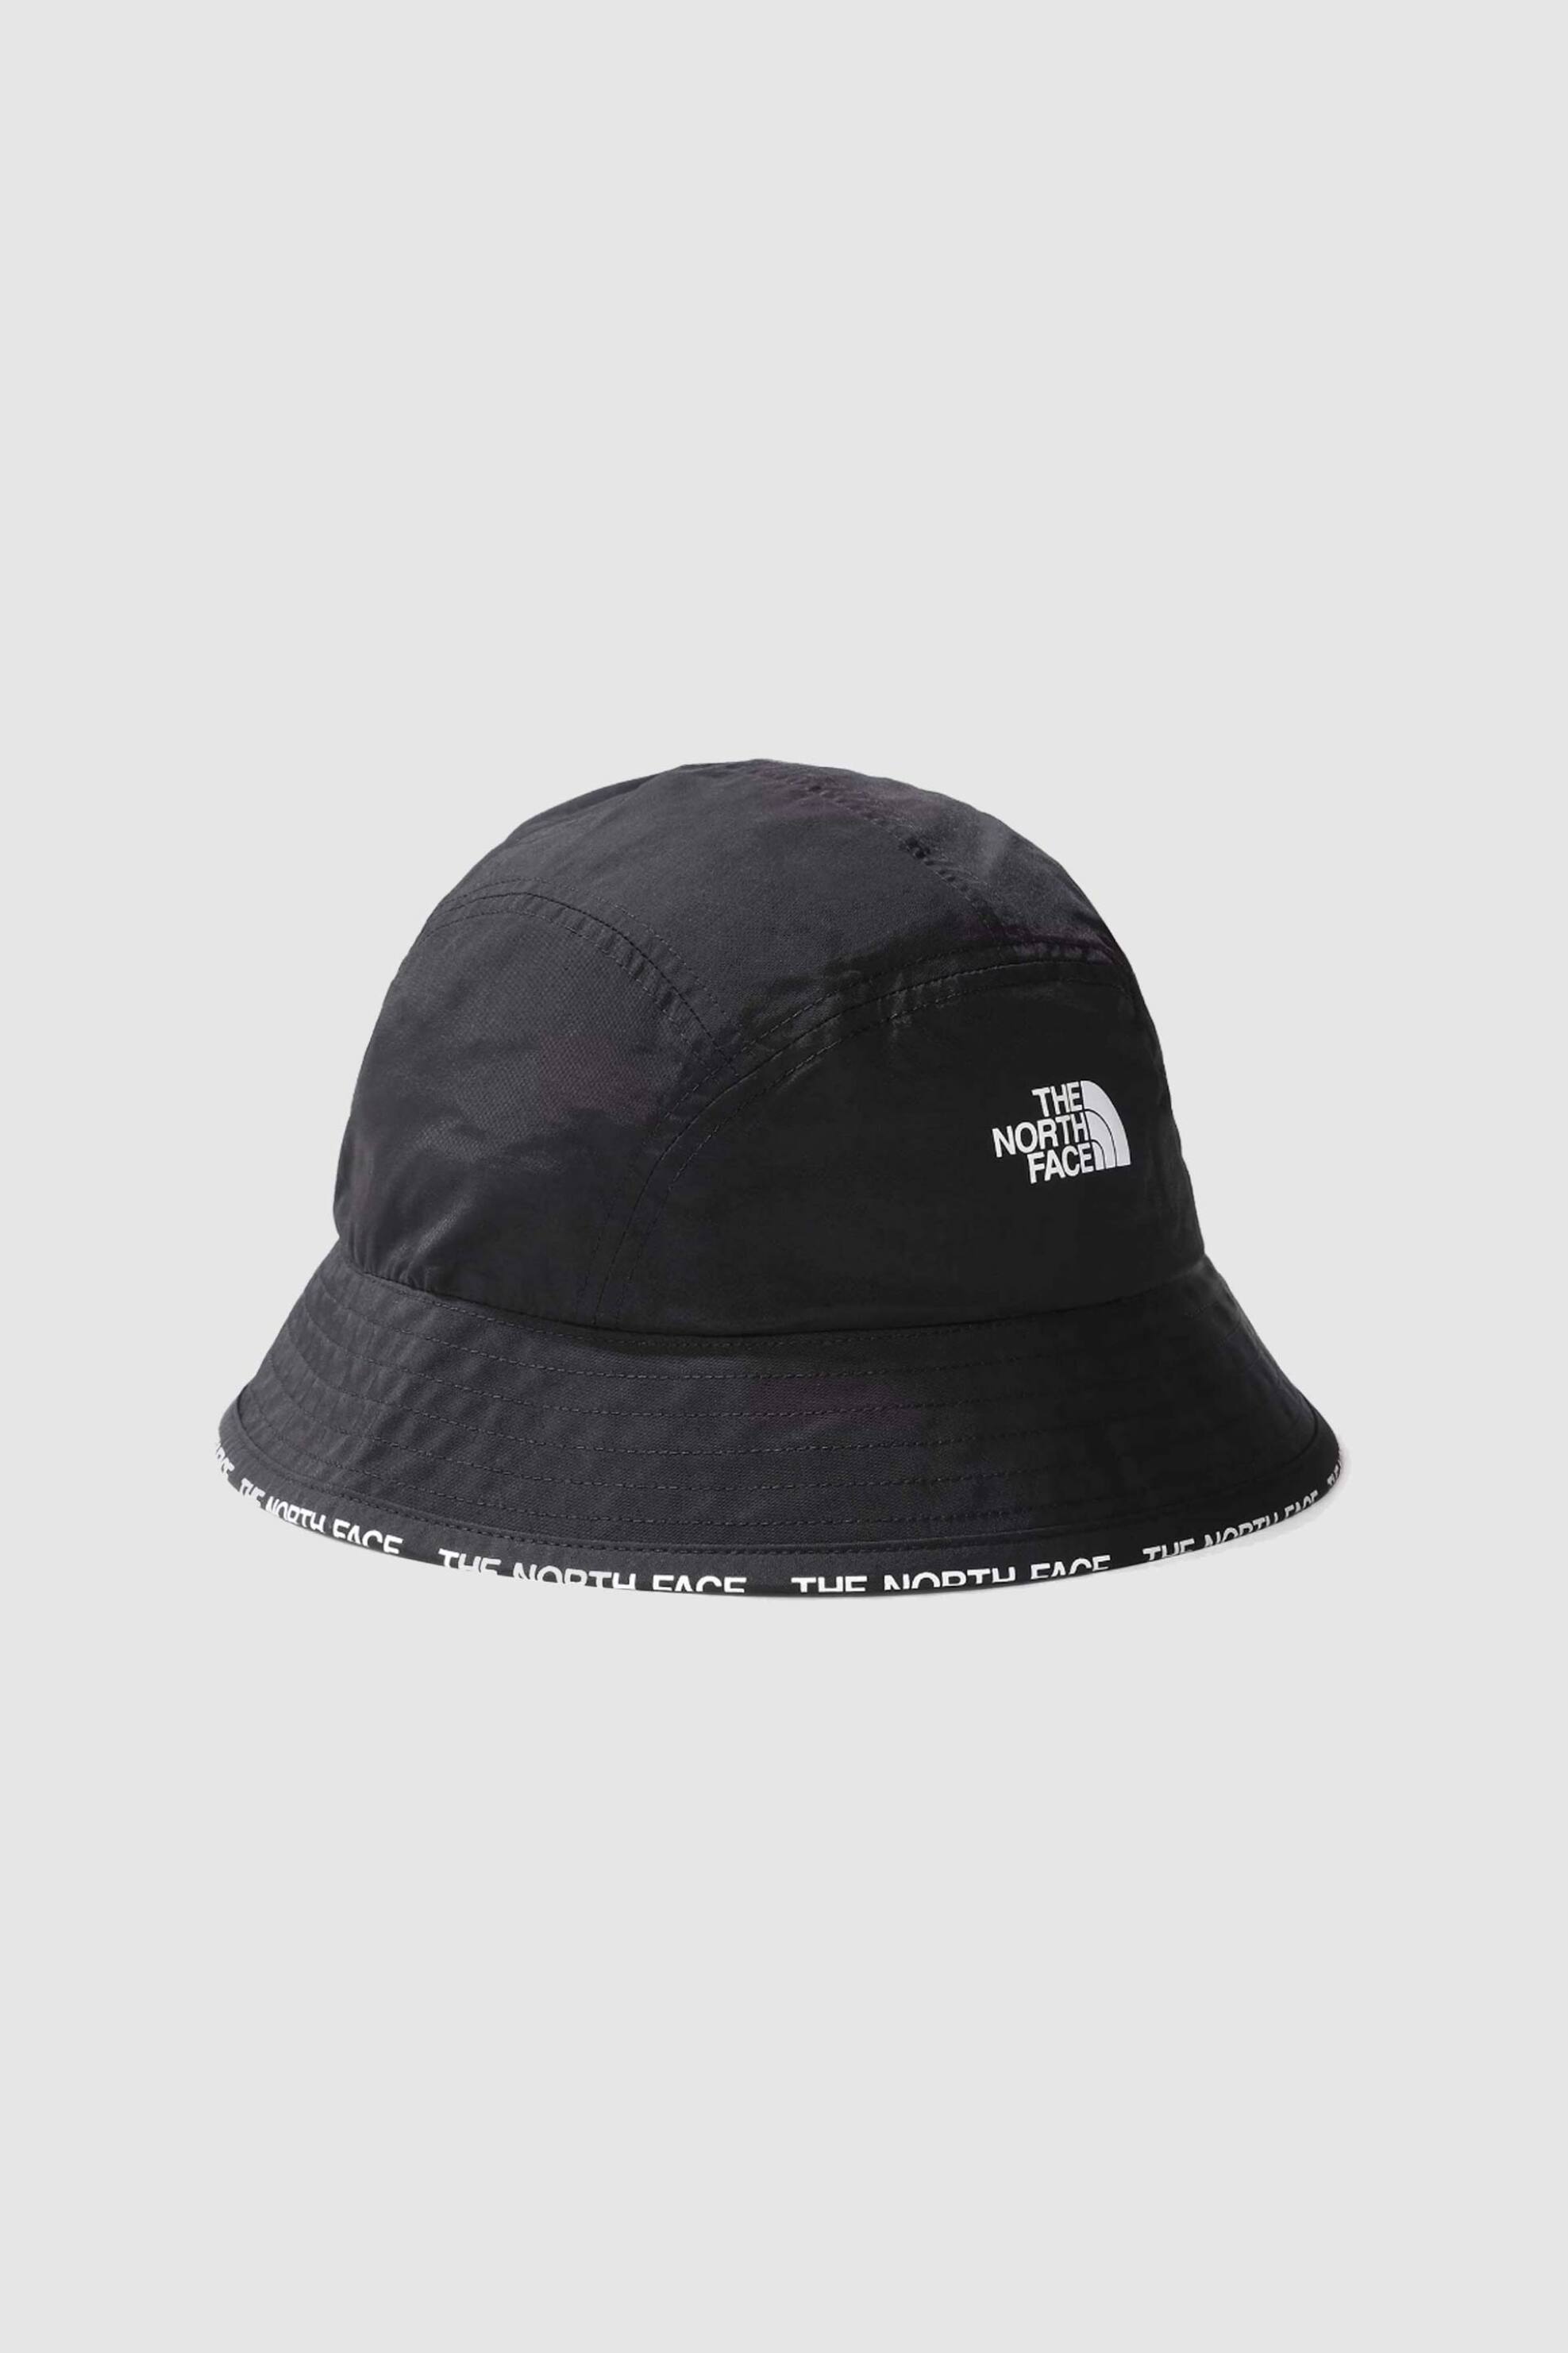 Ανδρική Μόδα > Ανδρικά Αξεσουάρ > Ανδρικά Καπέλα & Σκούφοι The North Face unisex καπέλο bucket μονόχρωμο με contrast logo print "Cypress" - NF0A7WHAJK31 Μαύρο